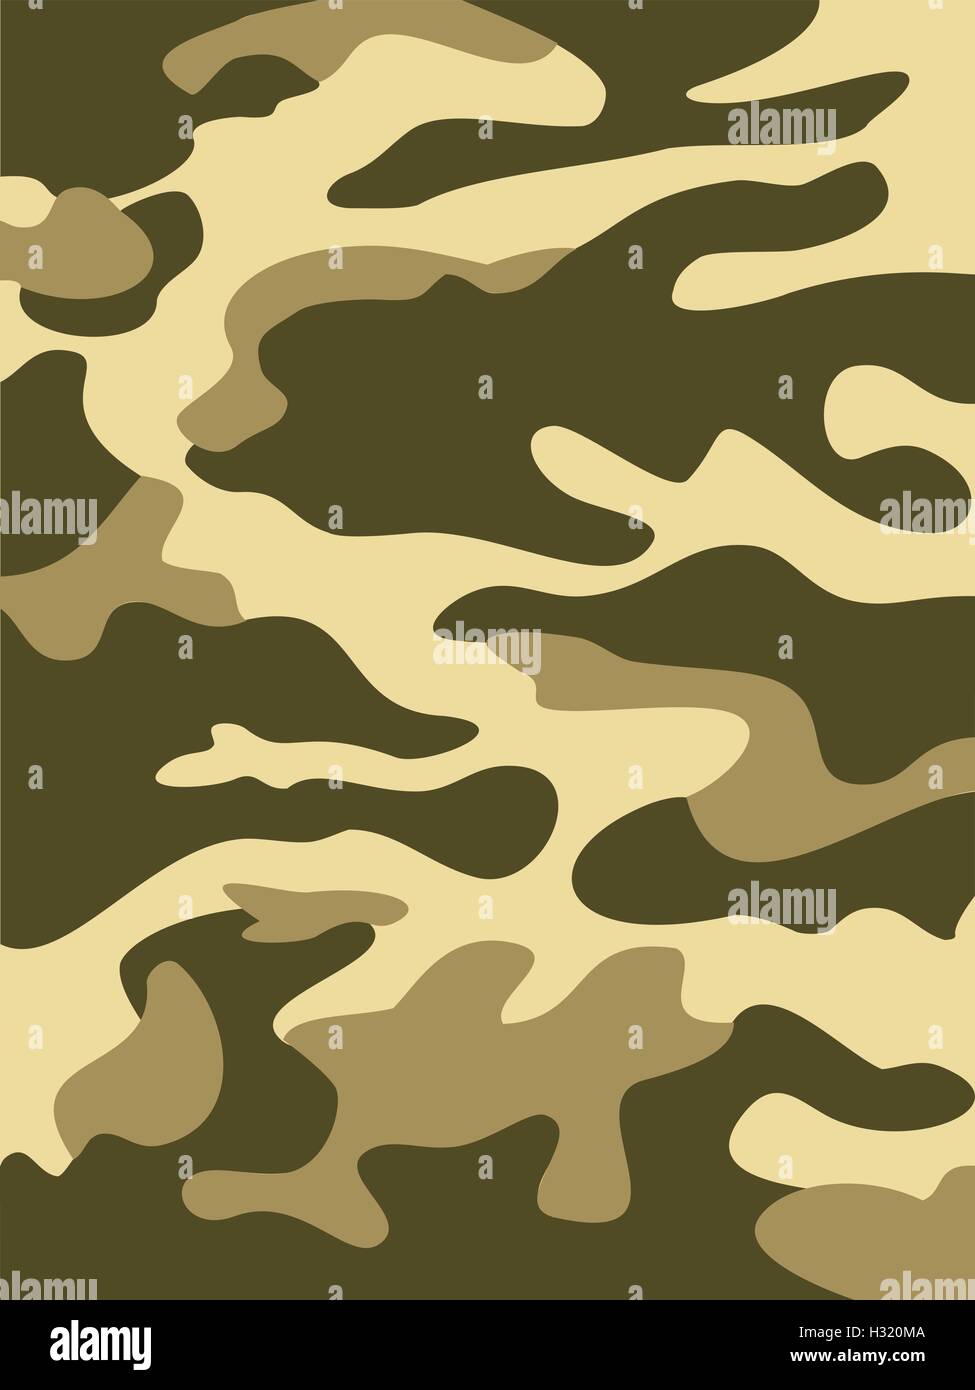 Camouflage-Muster Hintergrund nahtloser Vektor-Illustration. Klassische Kleidungsstil Maskierung Camo wiederholten Druck. Oliven grün khaki Stock Vektor